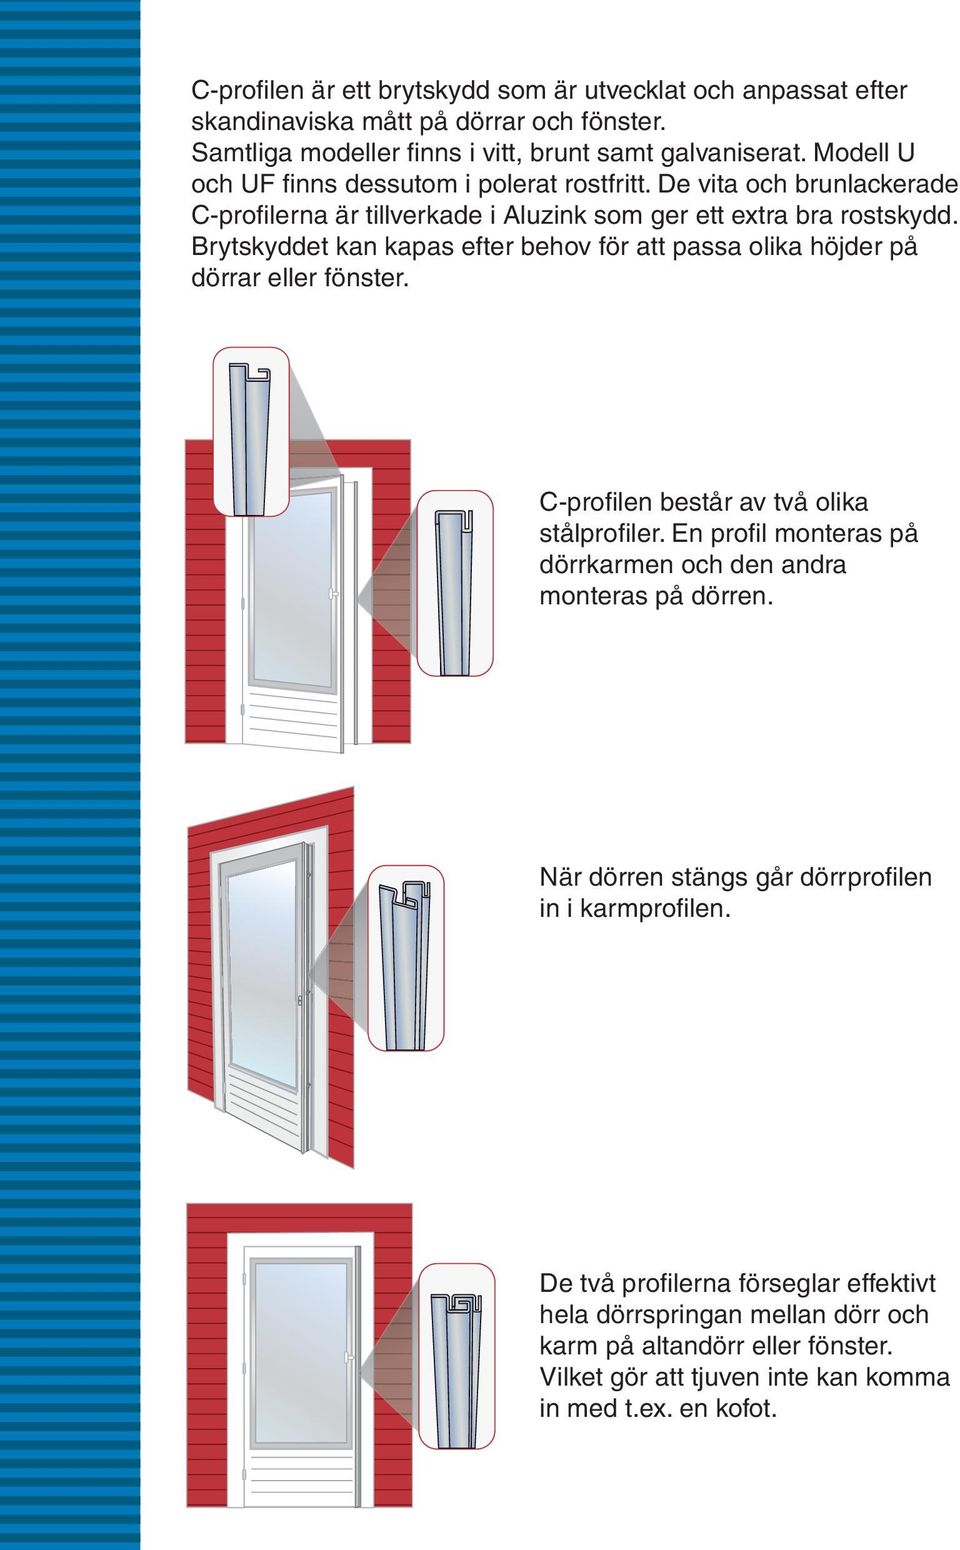 Brytskyddet kan kapas efter behov för att passa olika höjder på dörrar eller fönster. C-profilen består av två olika stålprofiler.